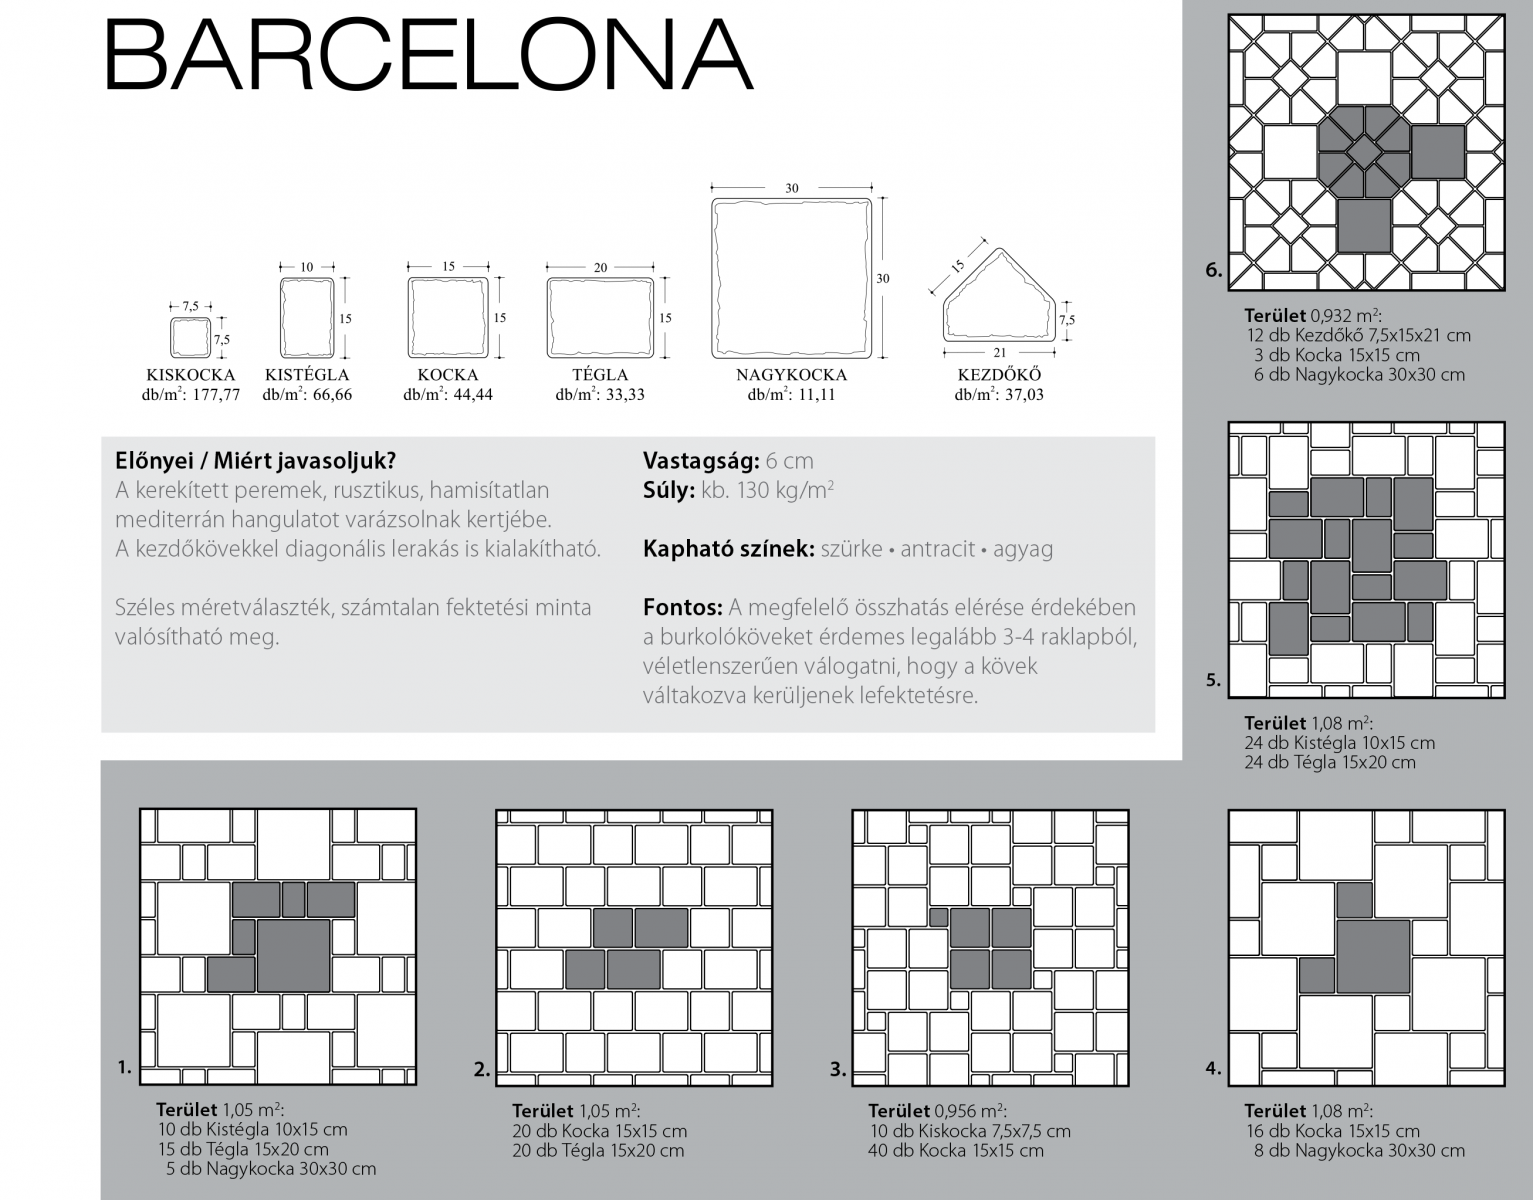 Barcelona technikai információi